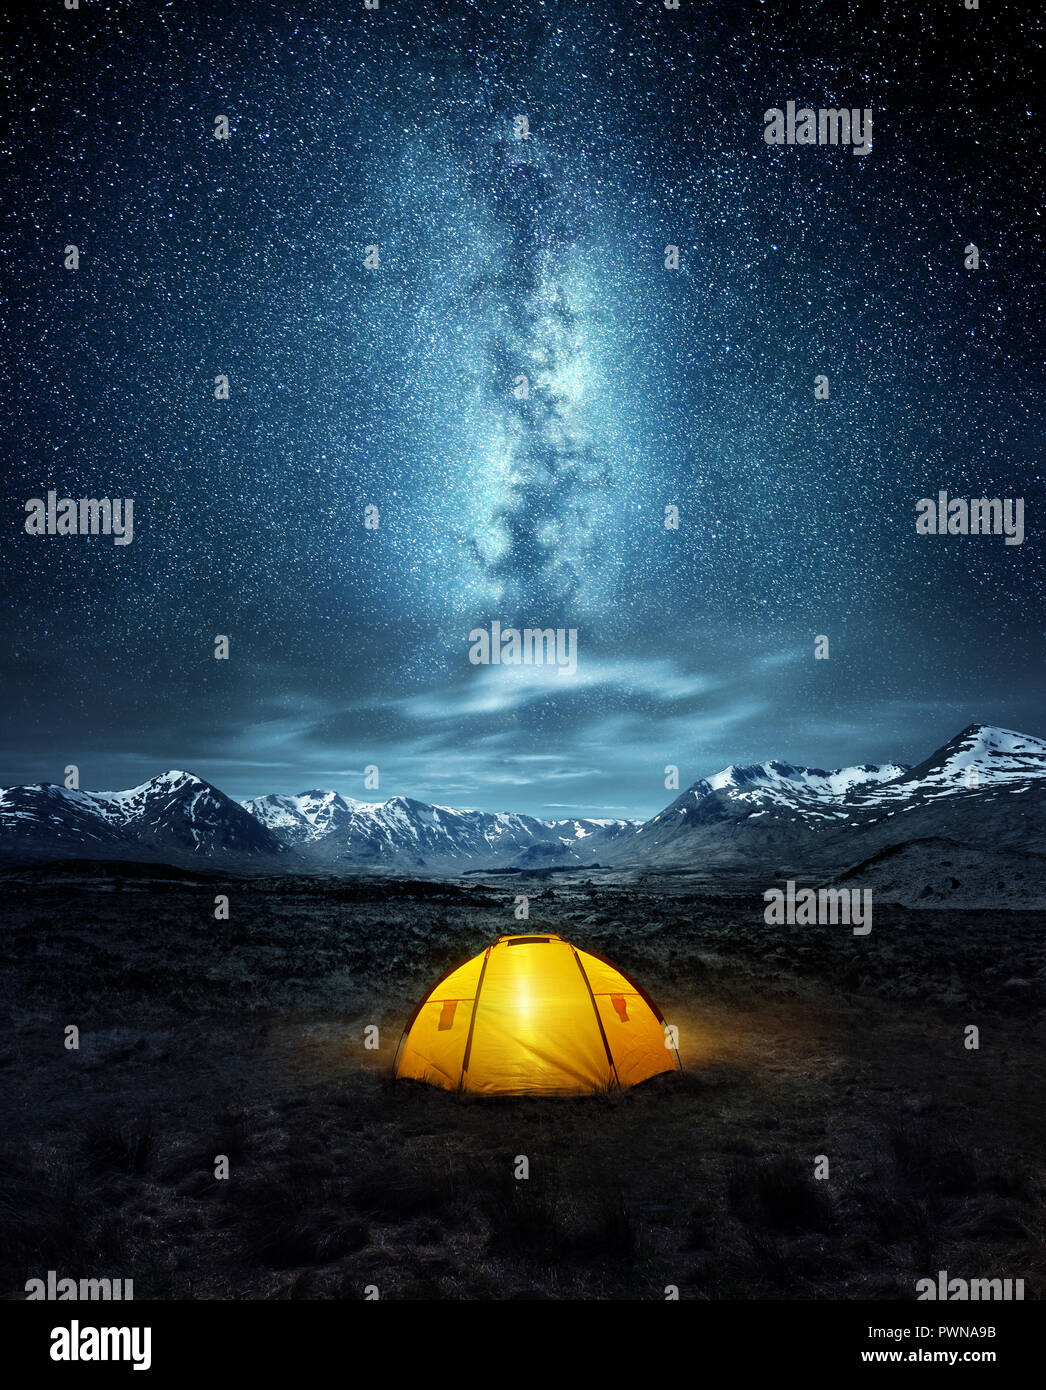 Camping in der Wildnis. Ein Zelt unter dem leuchtenden Sternenhimmel Sterne der Milchstraße mit schneebedeckten Bergen im Hintergrund. Natur Landschaft Stockfoto